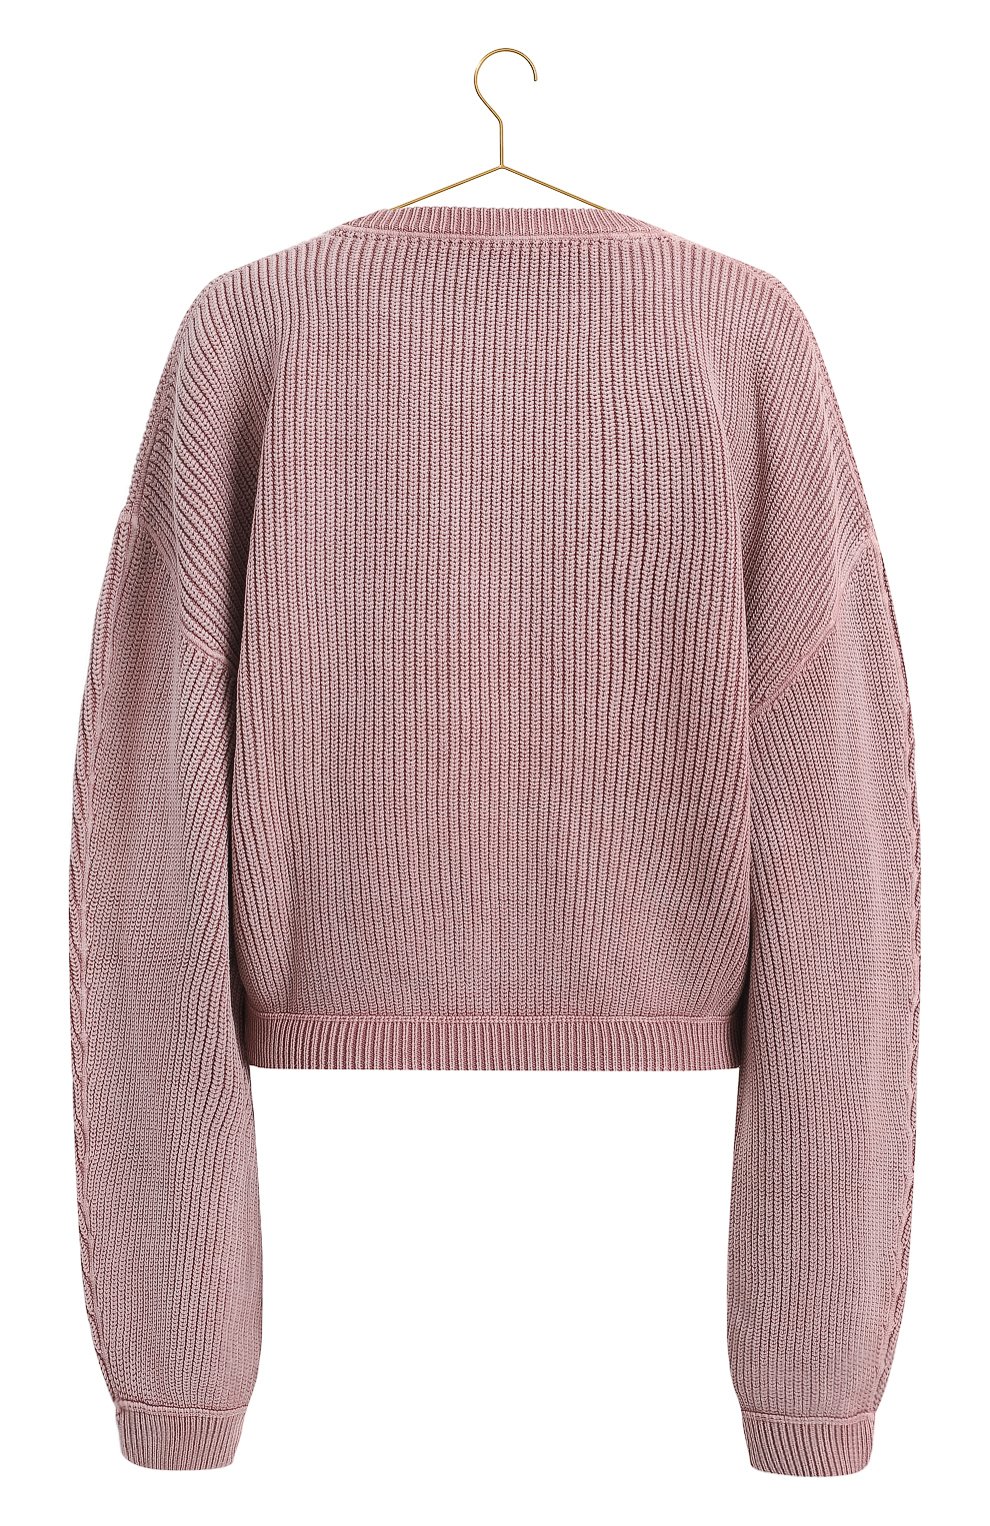 Хлопковый свитер | Alexander Wang | Фиолетовый - 2